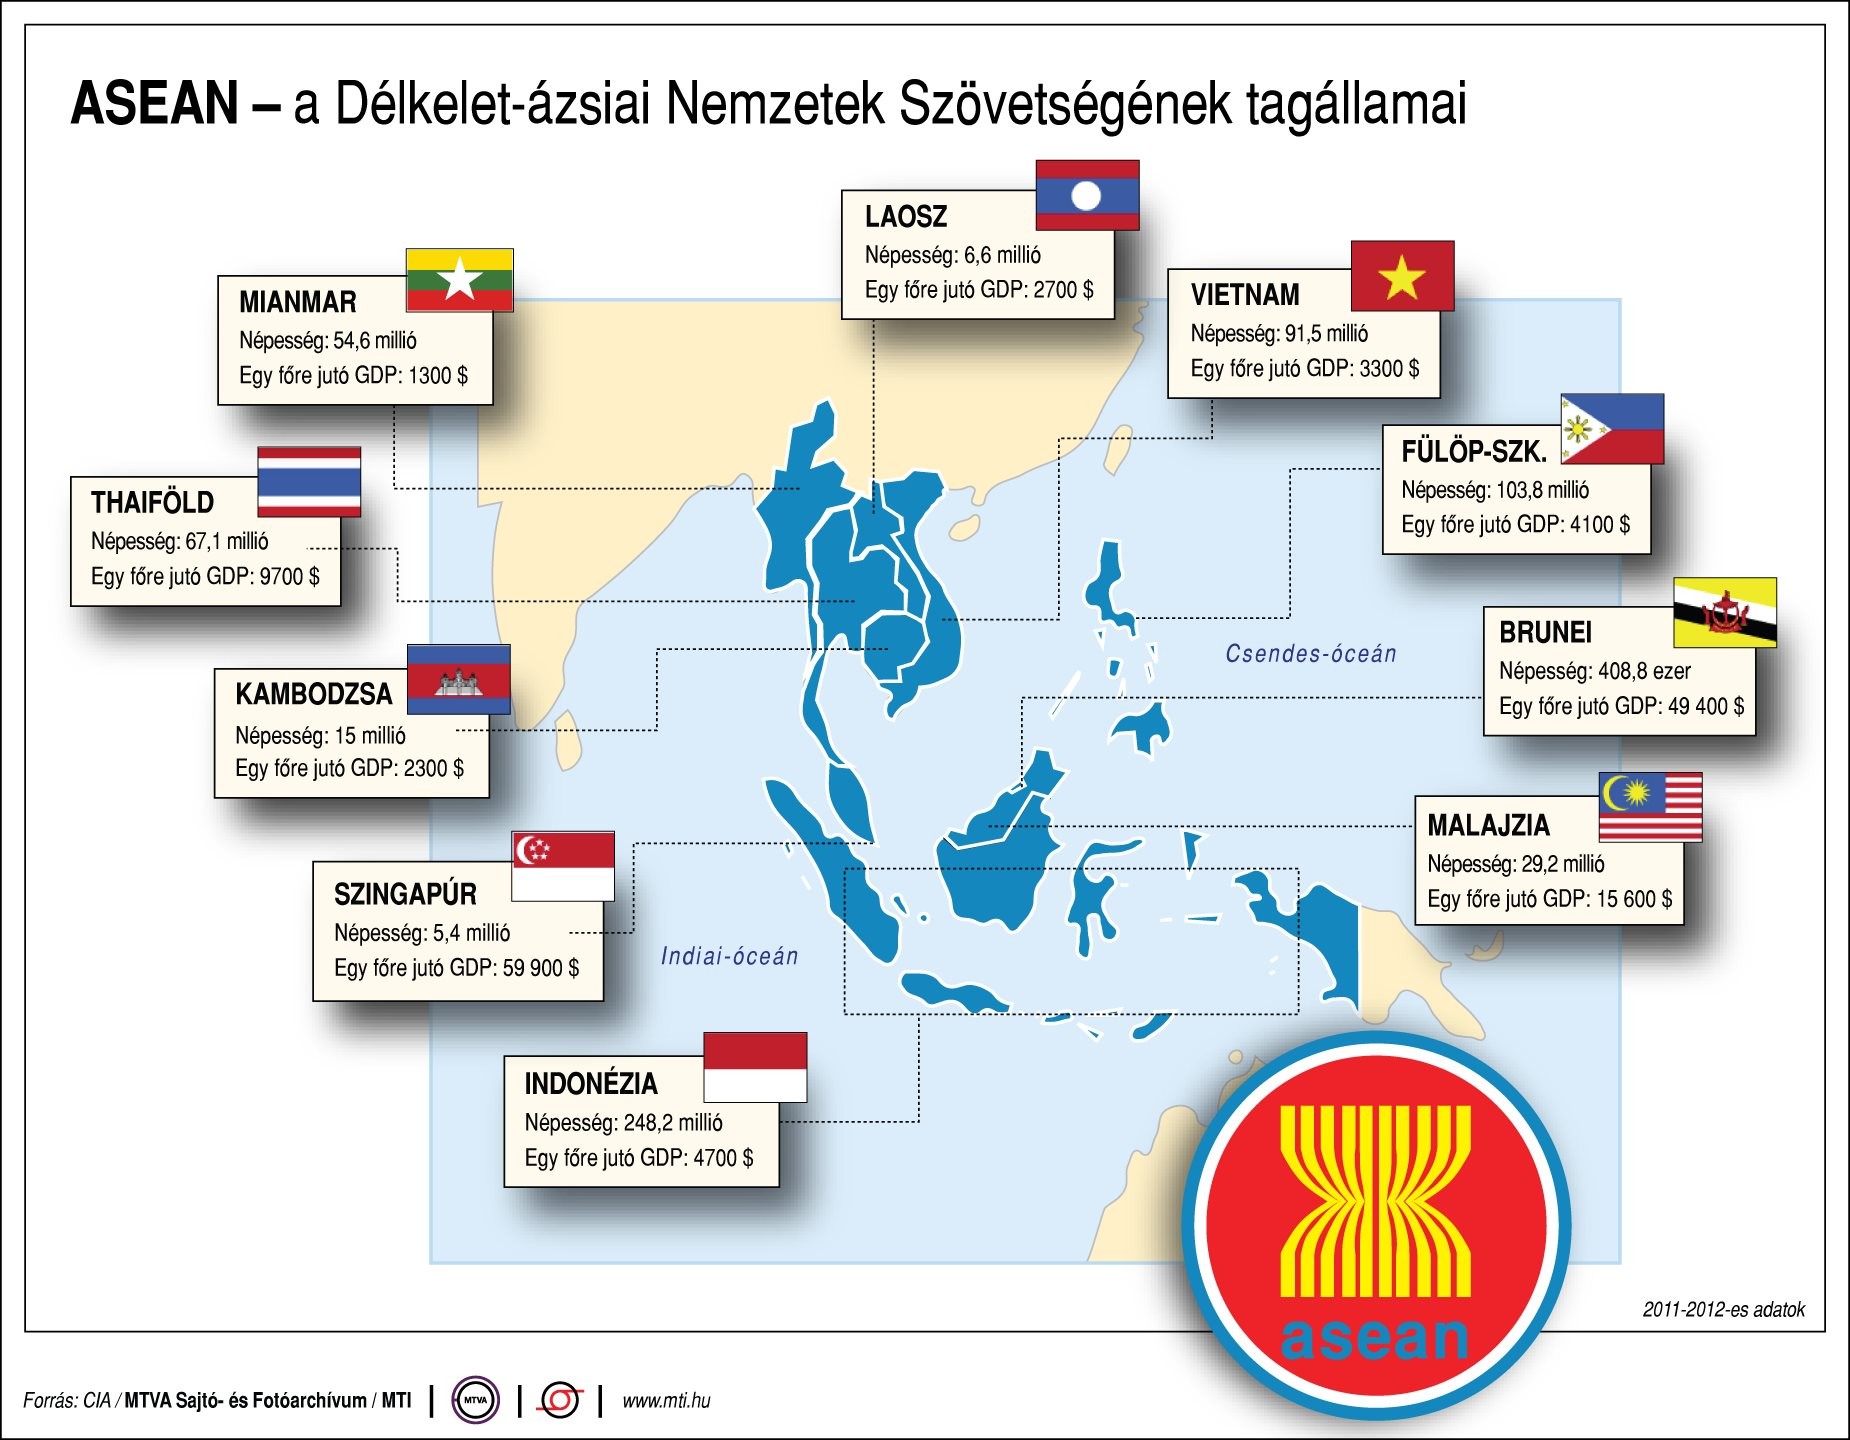 ASEAN - a Délkelet-ázsiai Nemzetek Szövetségének tagállamai